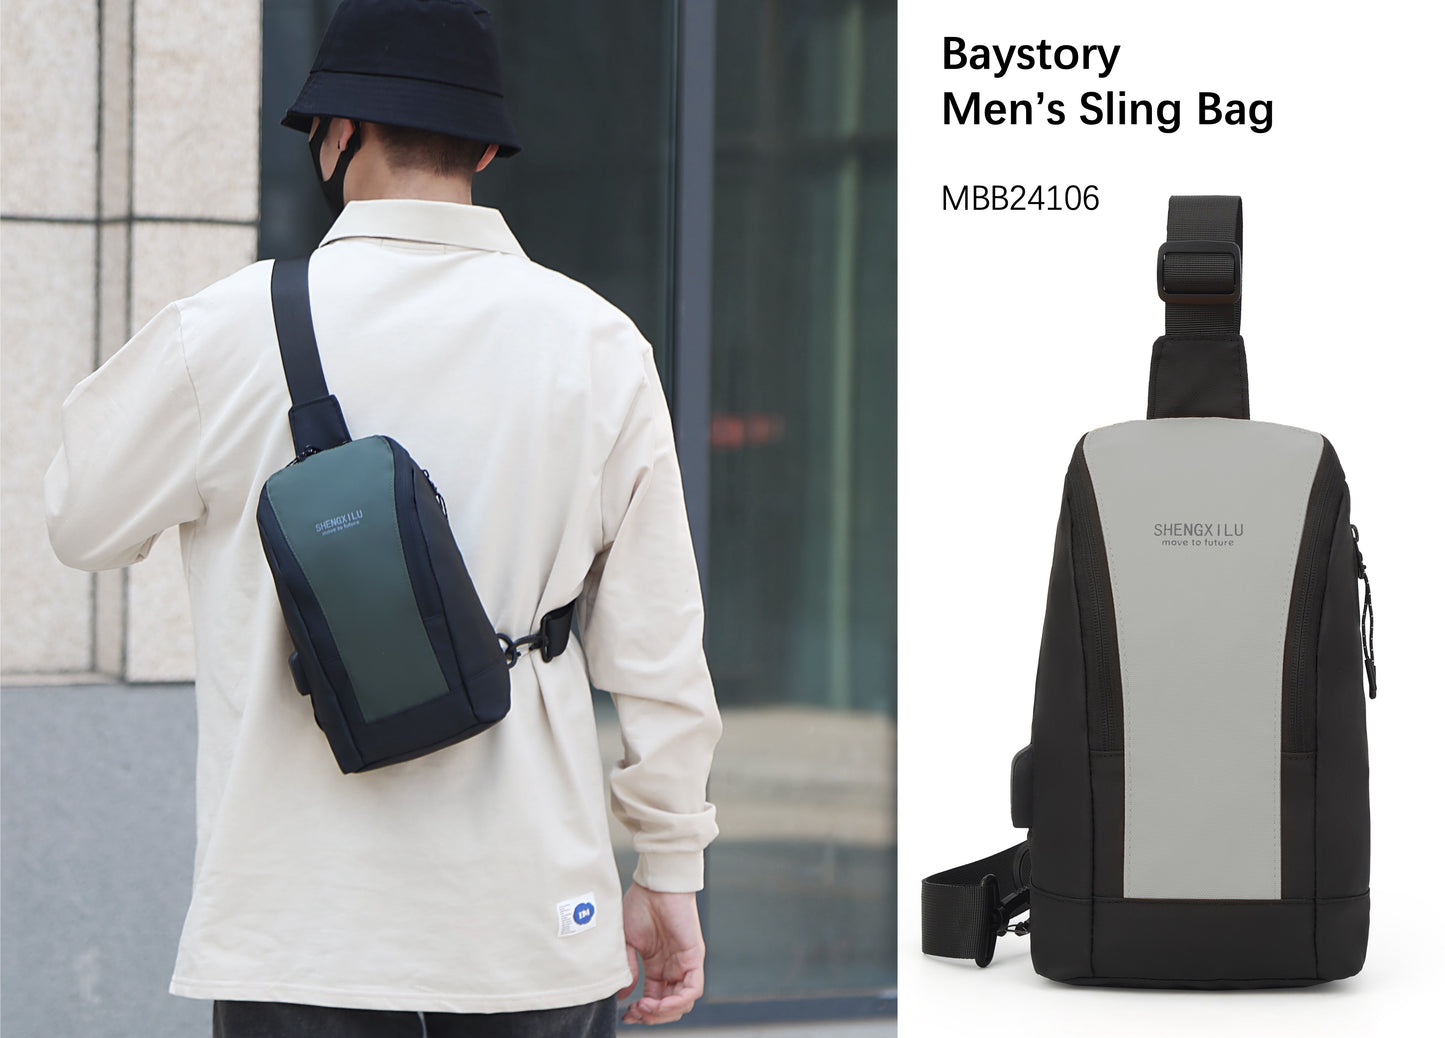 Baystory Men's Sling bag MBB24106 - Baystory